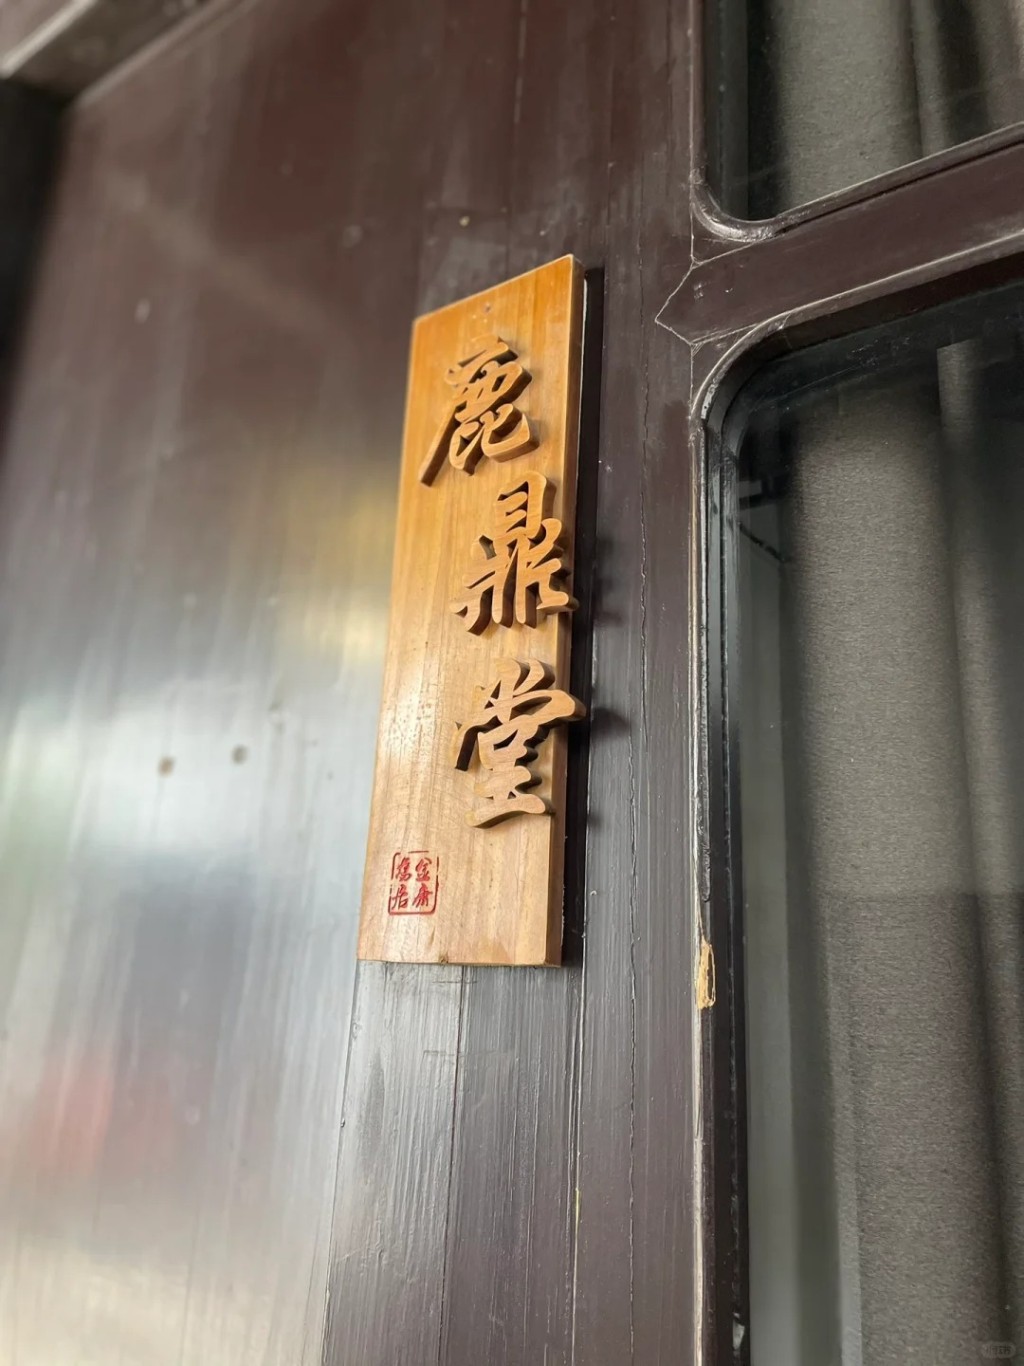 金庸在浙江的旧居。小红书